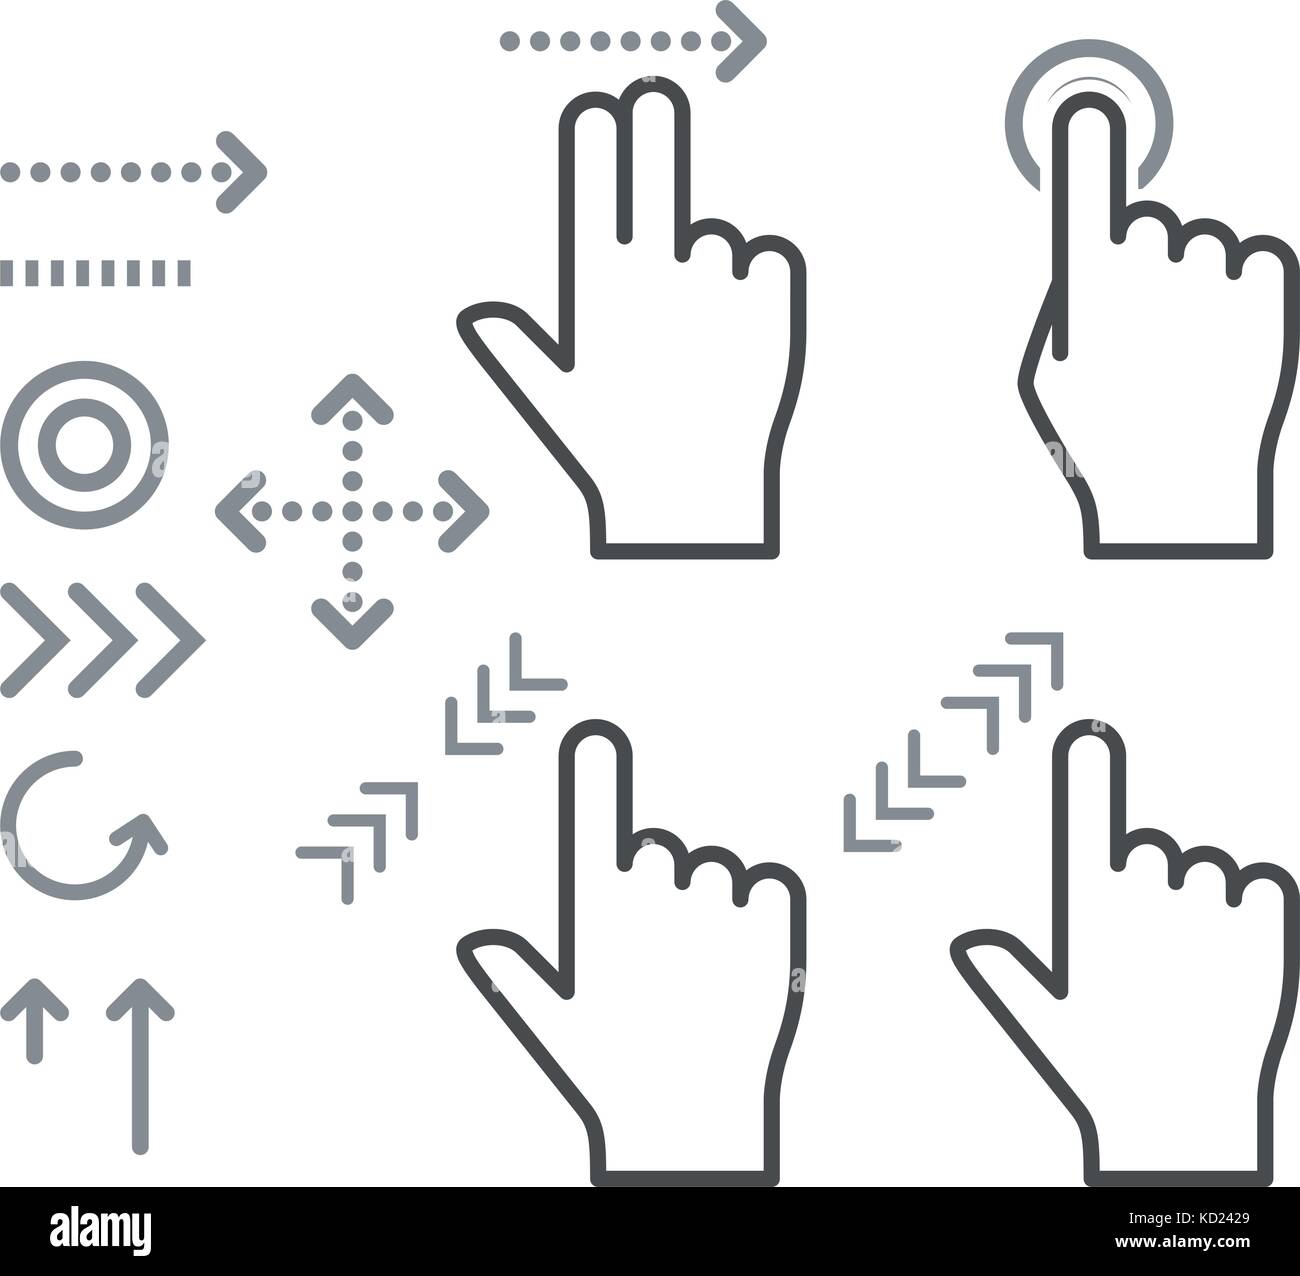 Geste d'écran tactile signes main icons Illustration de Vecteur